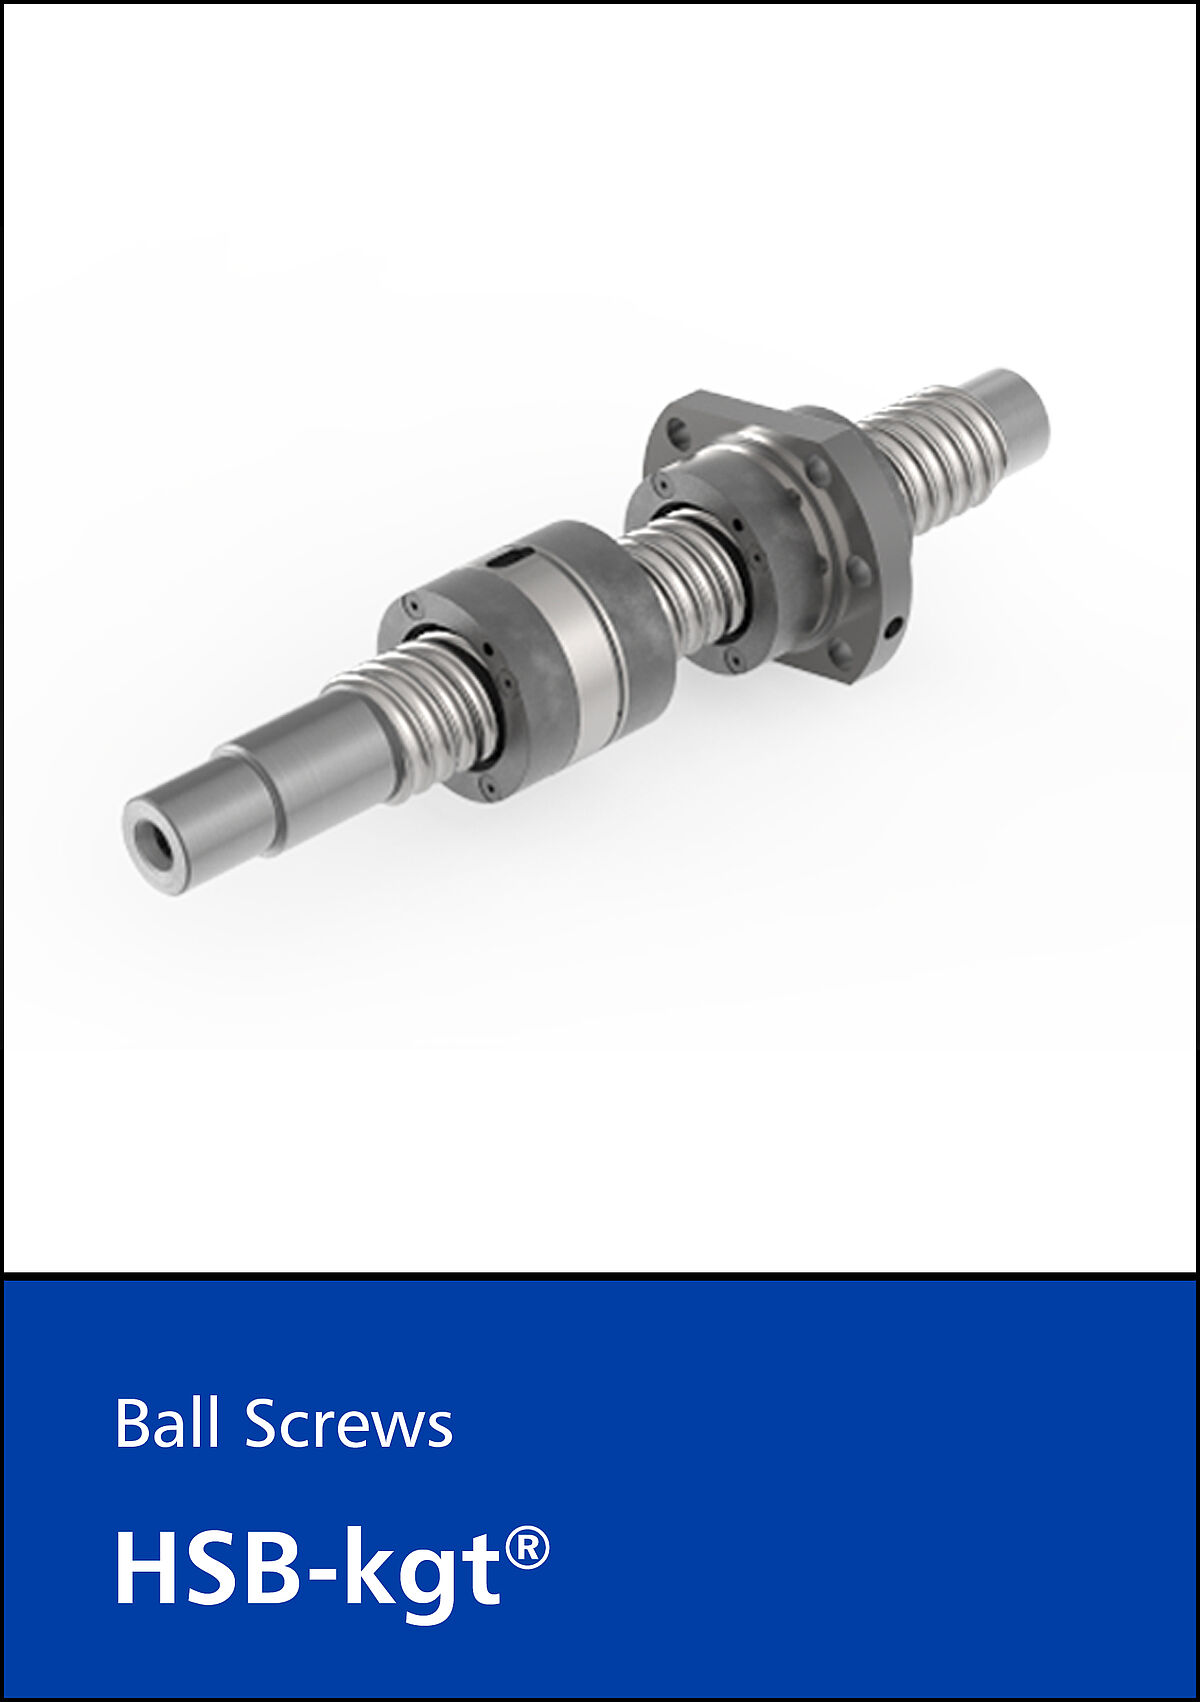 Ball screws HSB-kgt®